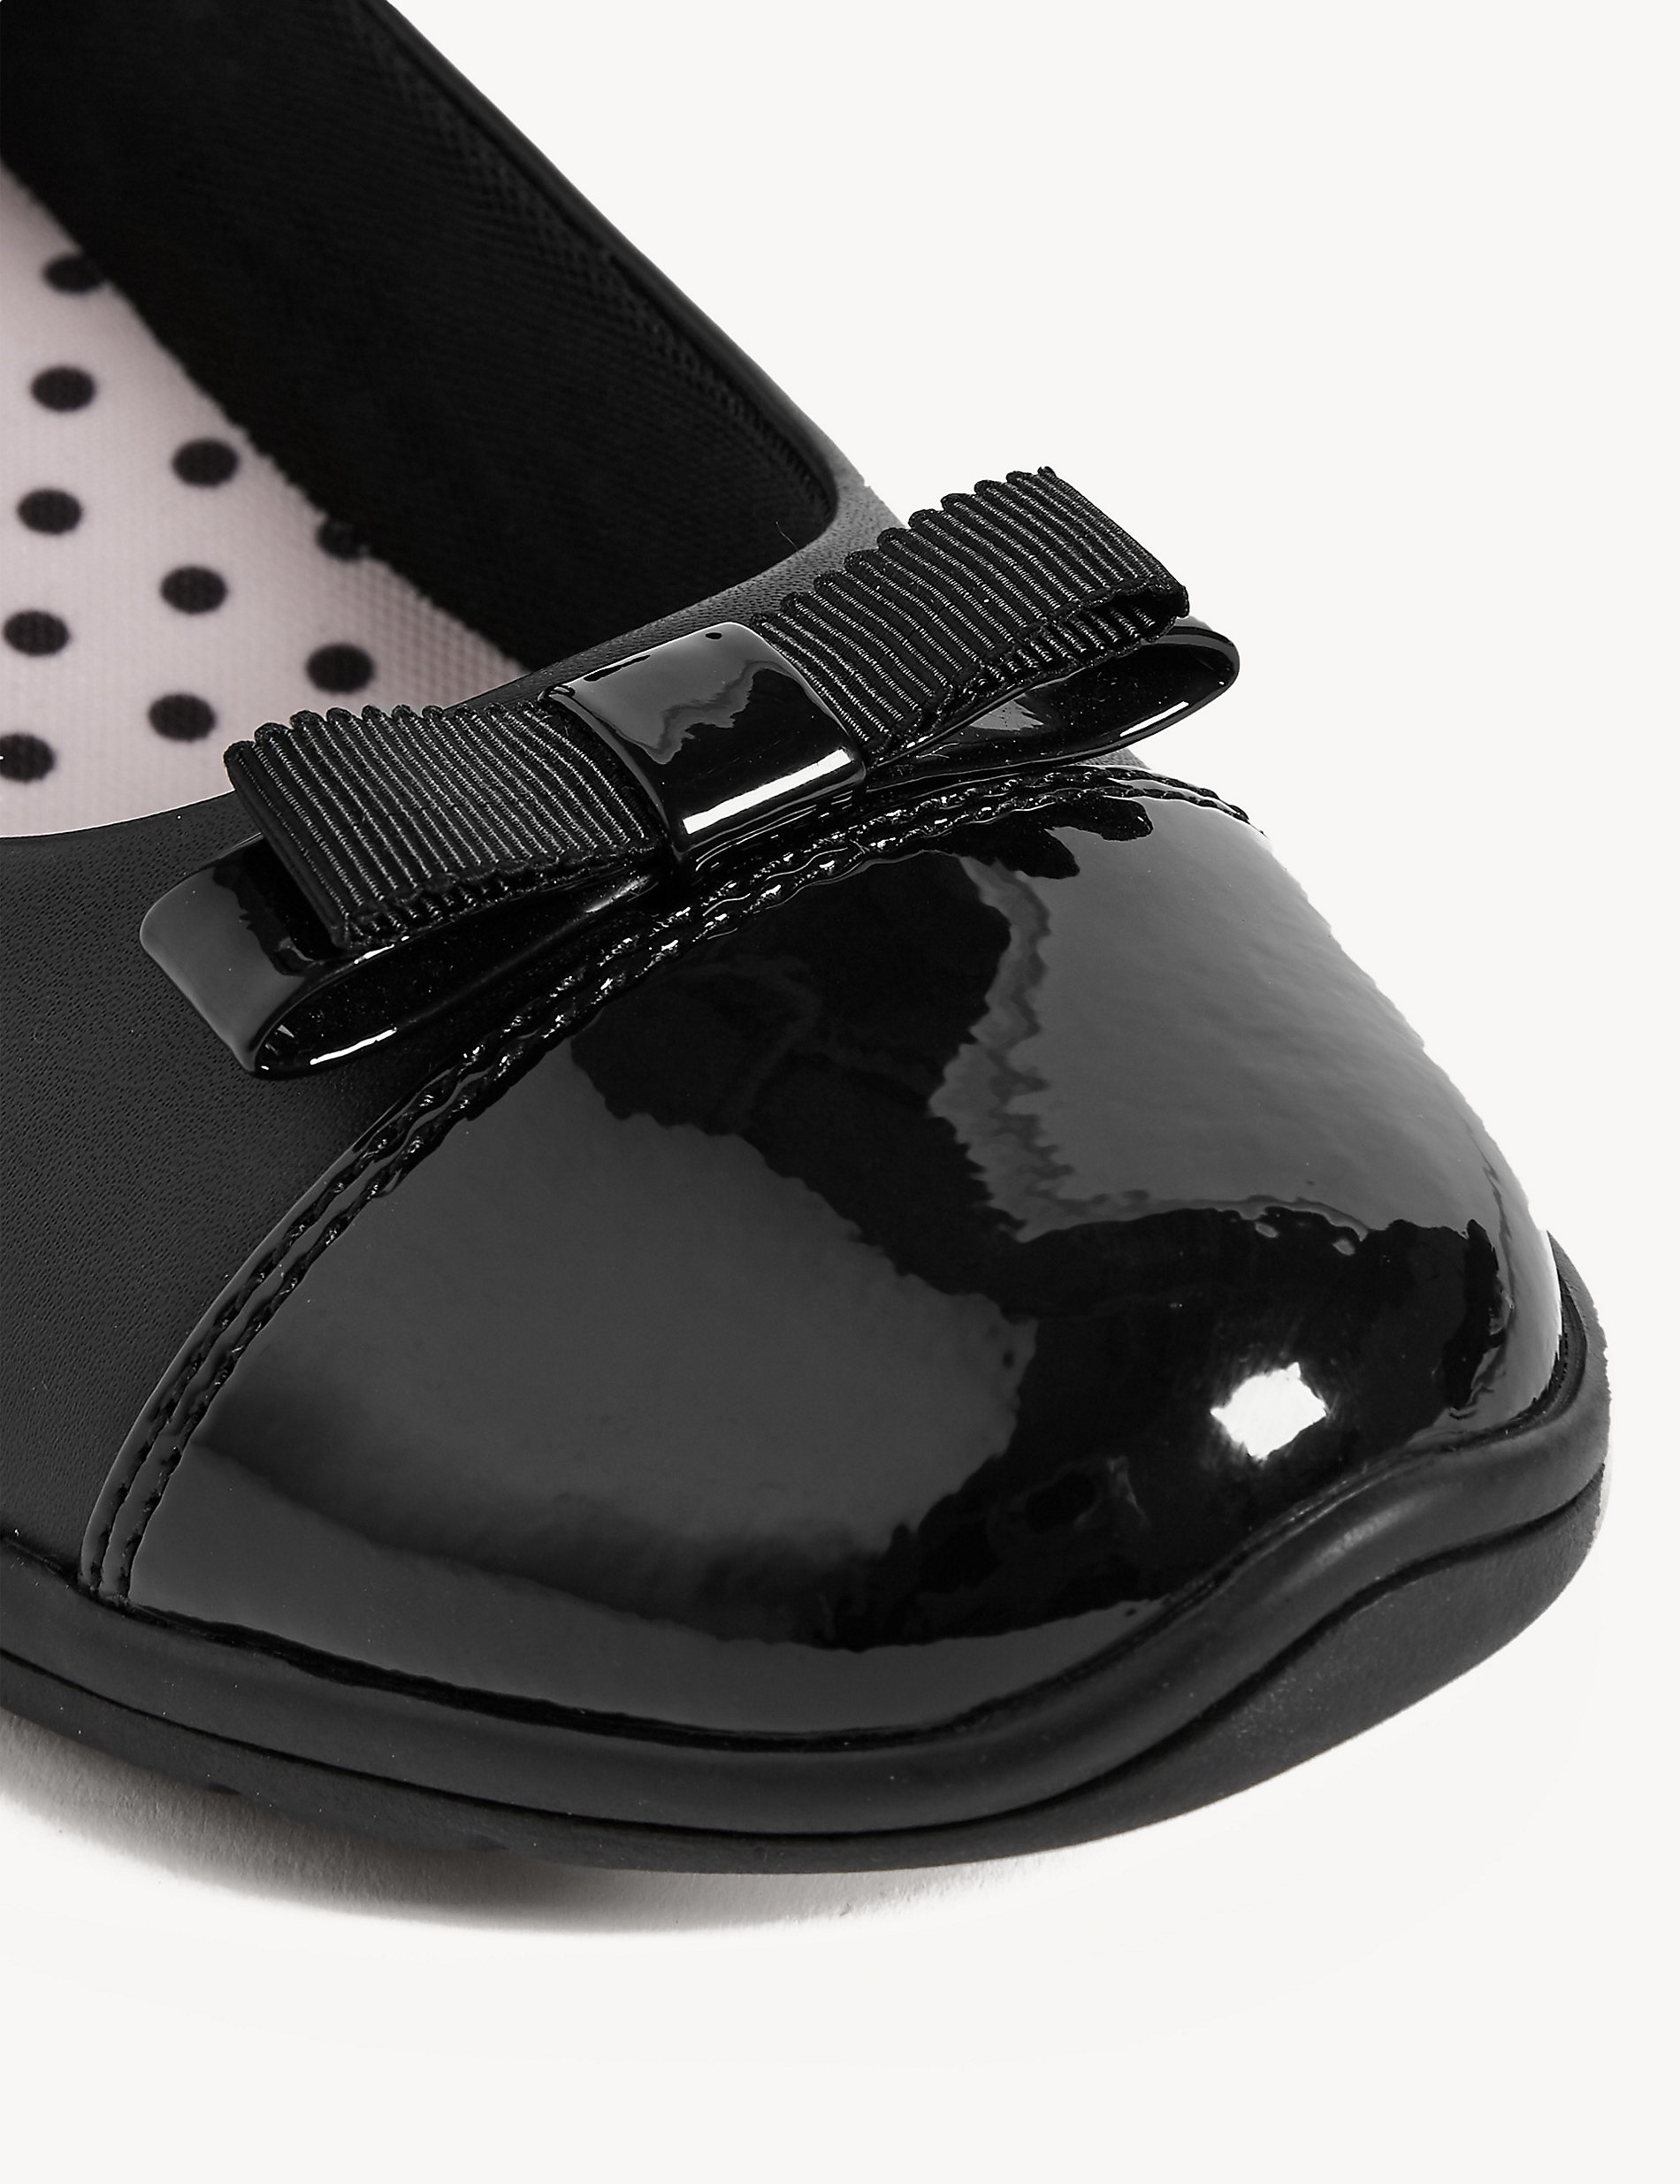 Zapatos de cuña infantiles escolares de piel (13 pequeño- 7 grande)